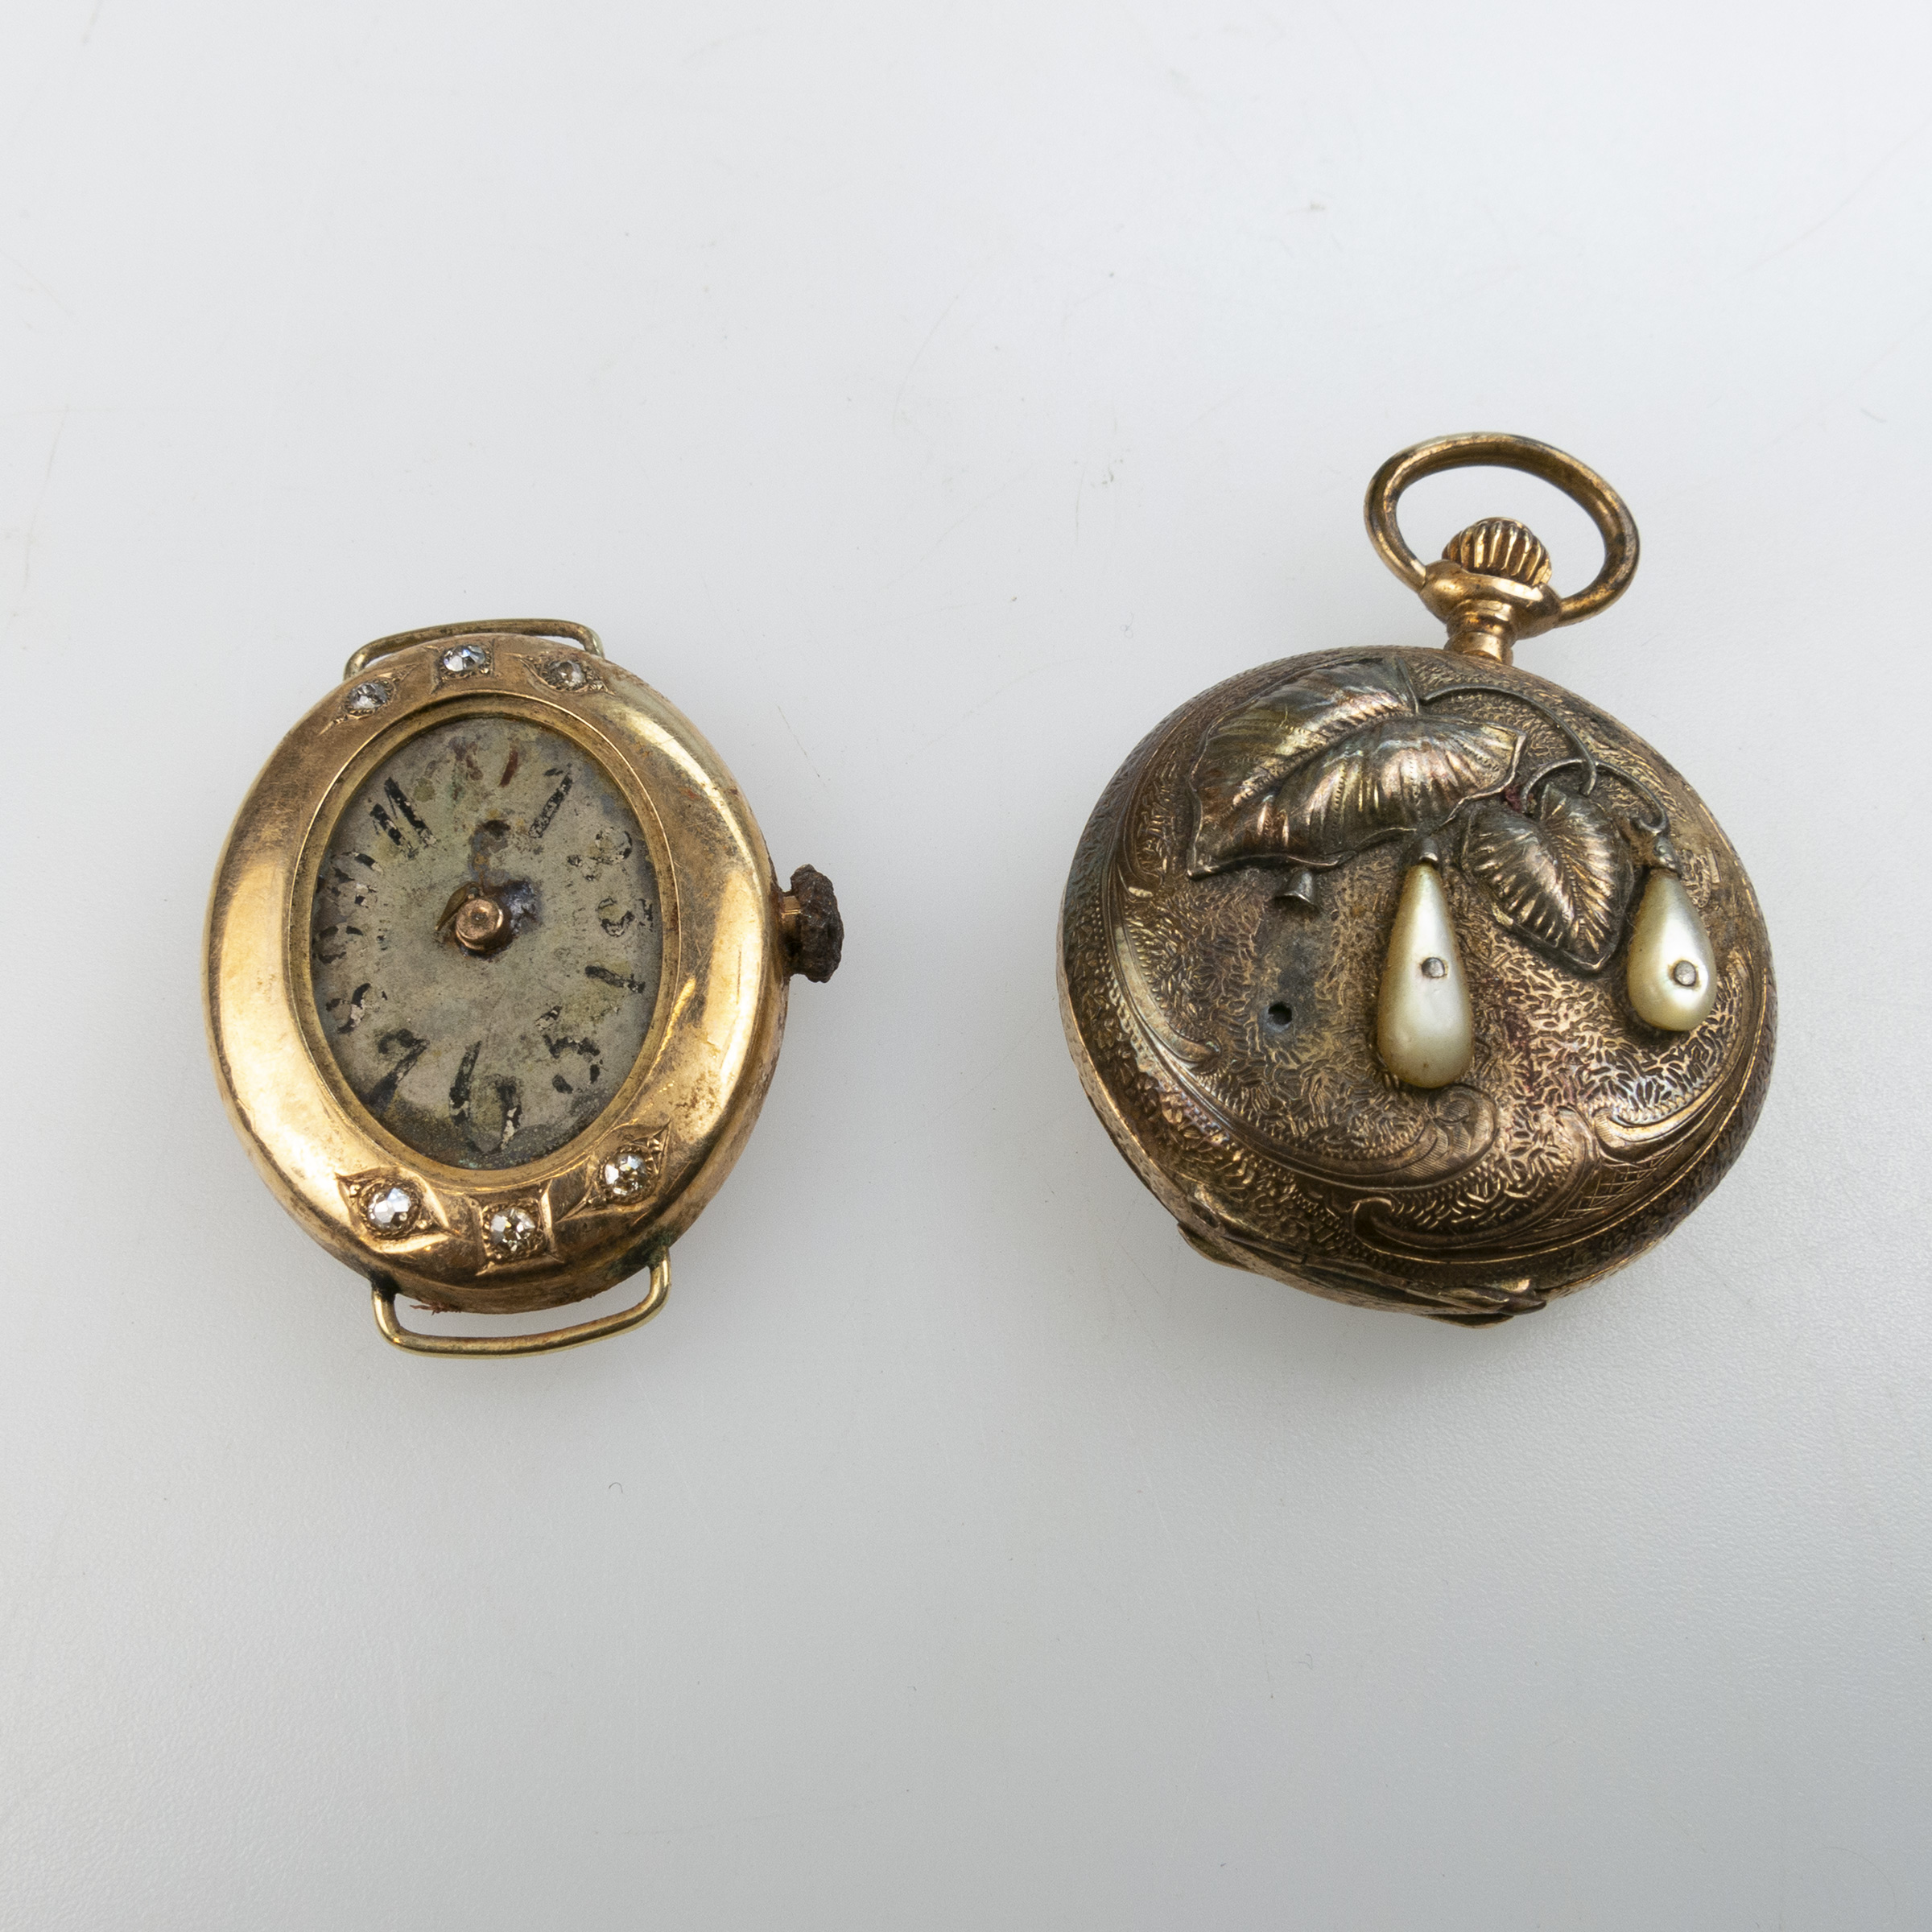 Lady's Early 20th Century Swiss Wristwatch